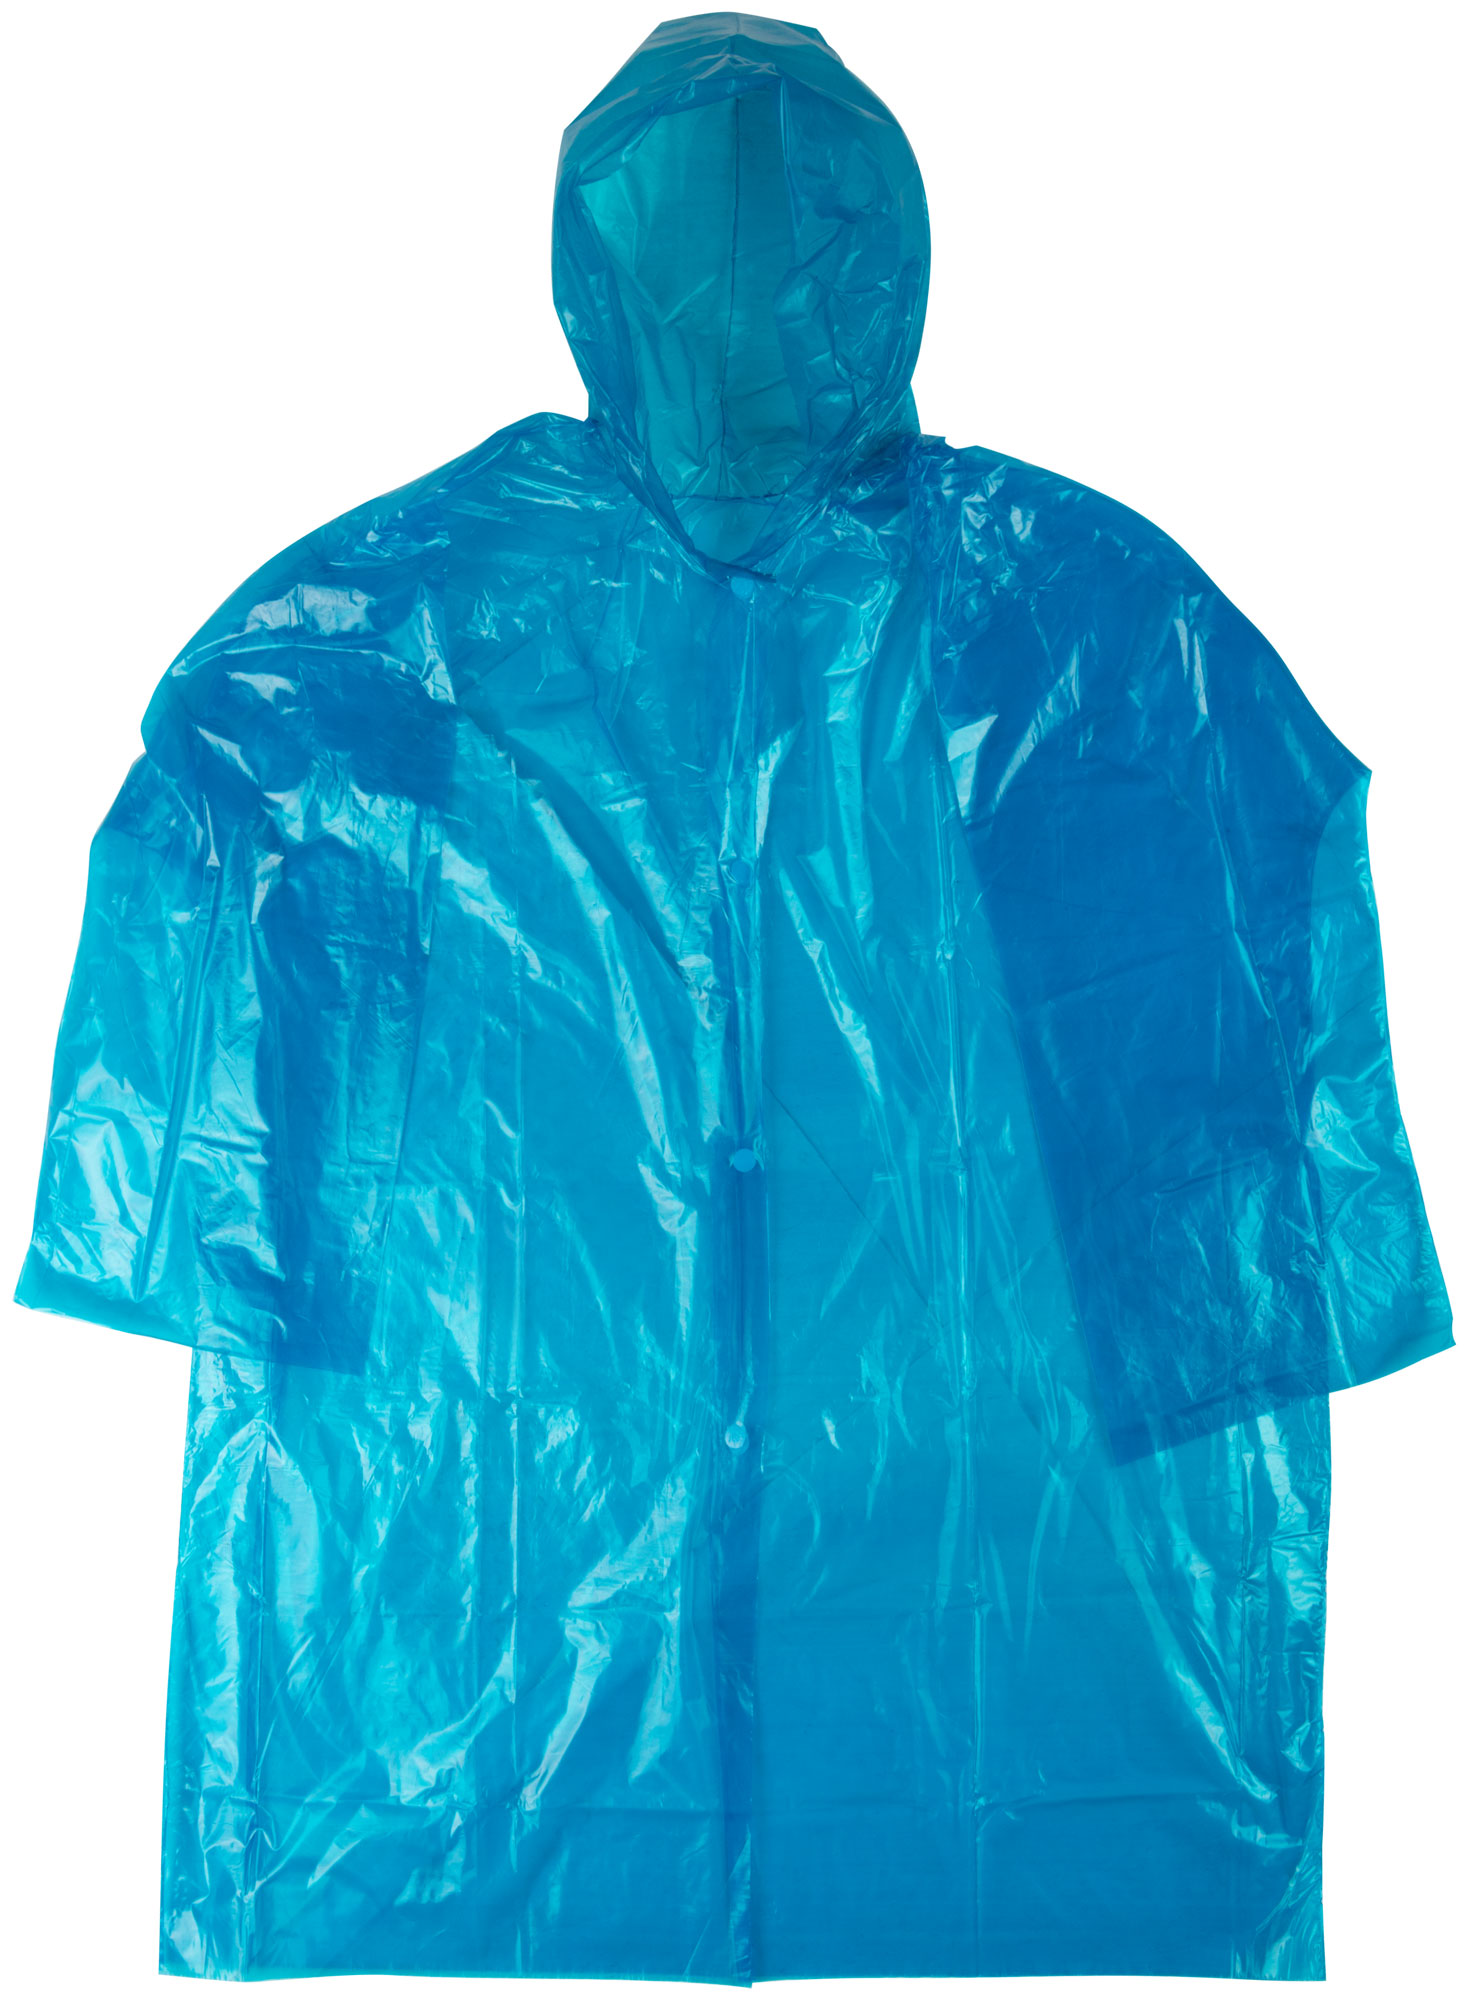 Плащ дождевик MOS усиленный синий, полиэтилен, размер XXXL 12155М